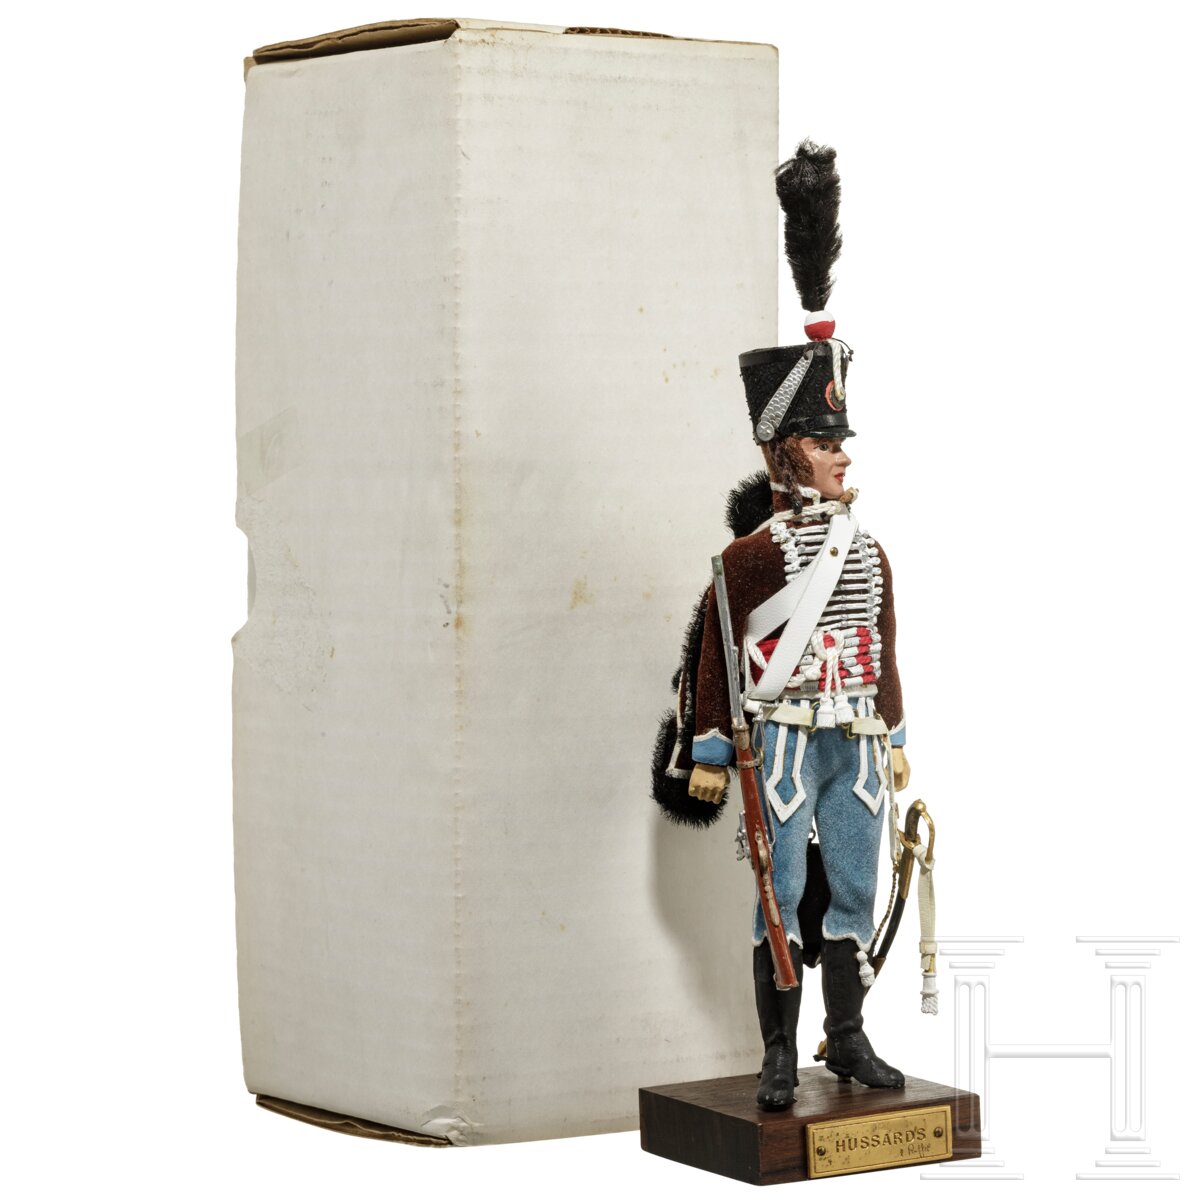 Husar um 1808 - Uniformfigur von Marcel Riffet, 20. Jhdt.